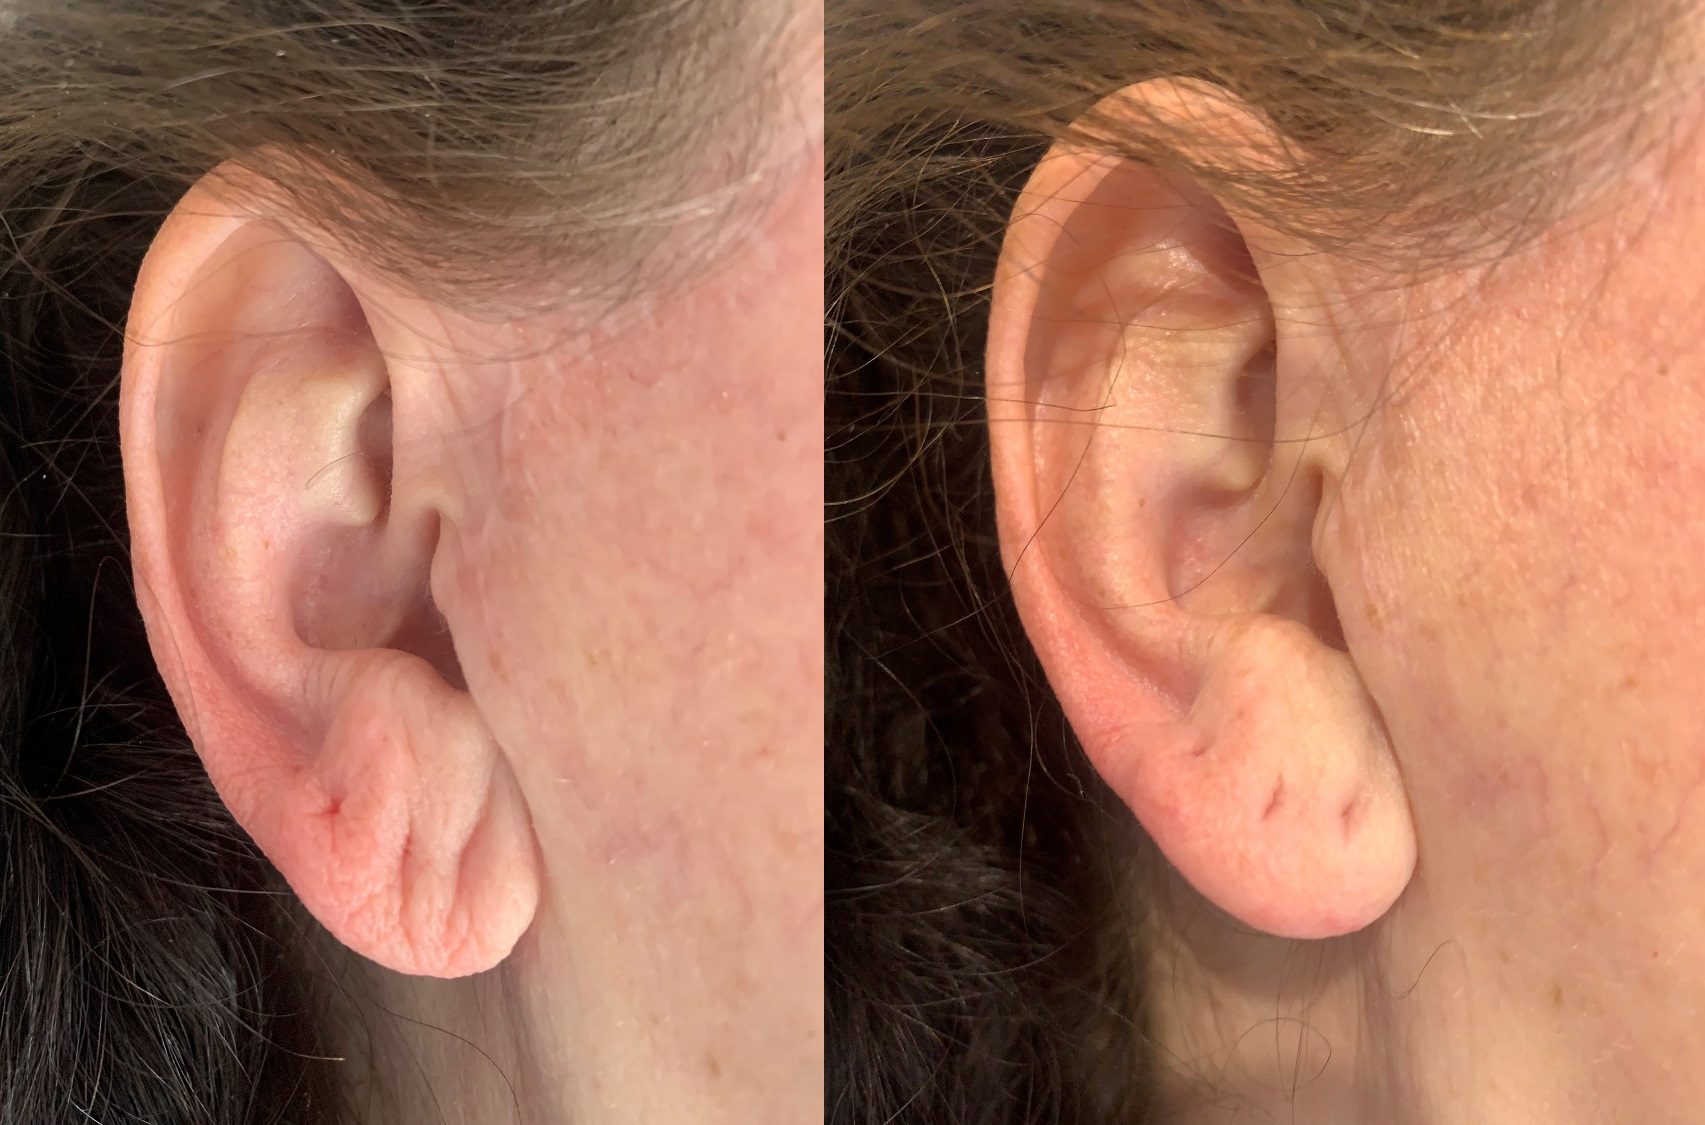 dermal fillers hyaluronic acid filler for earlobe rejuvenation before and after